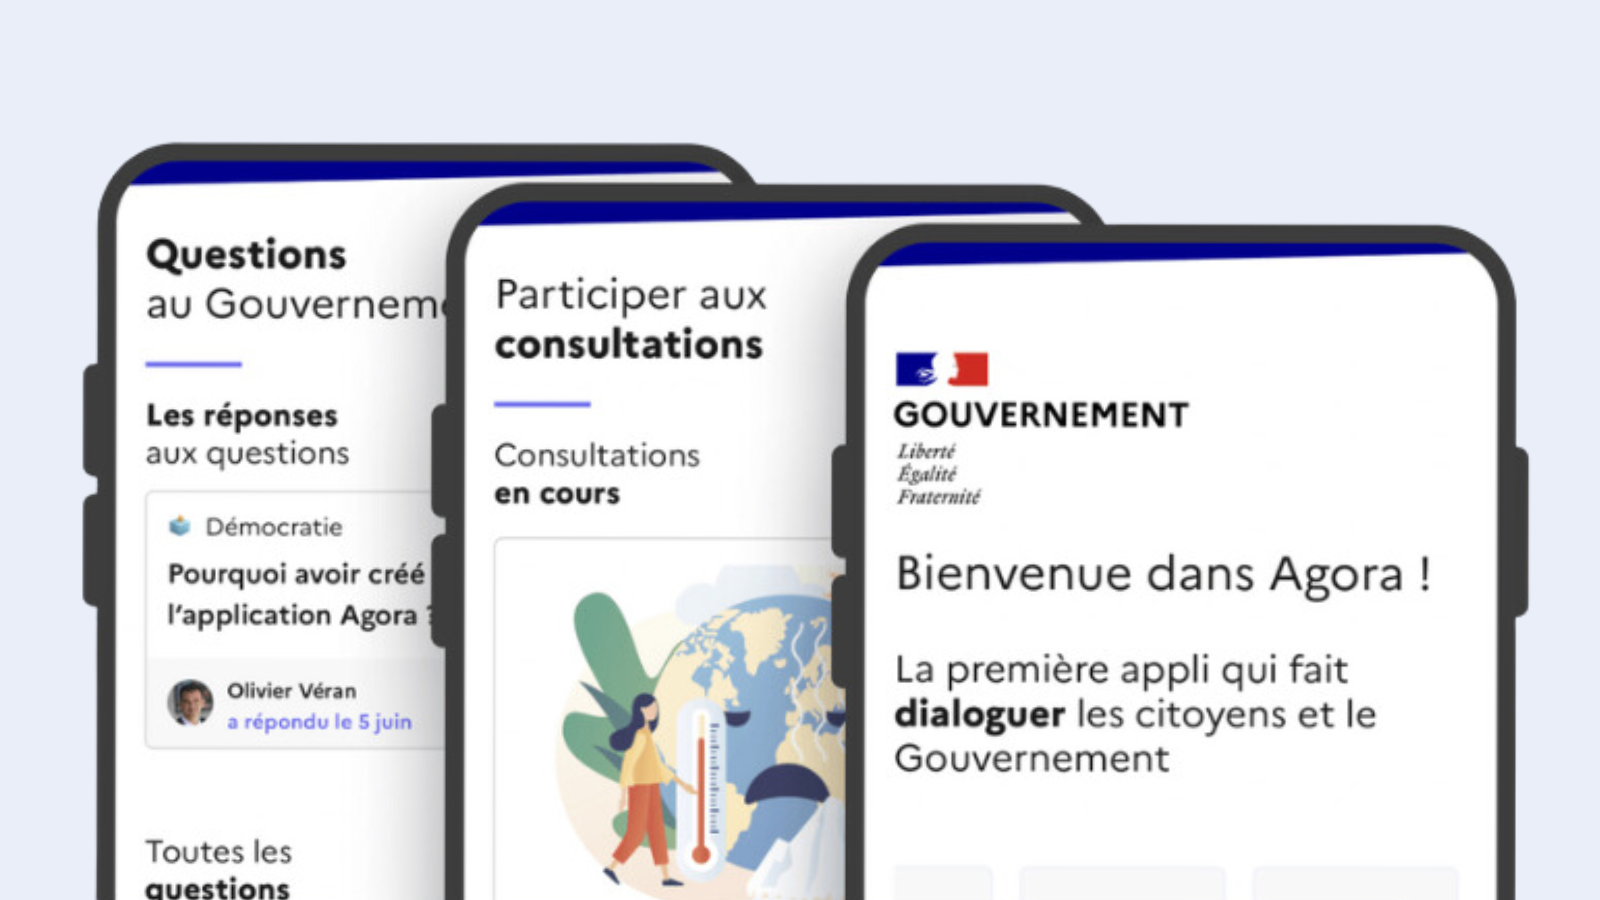 Penerapan Agora: melibatkan Perancis dalam pengambilan keputusan yang menyangkut mereka